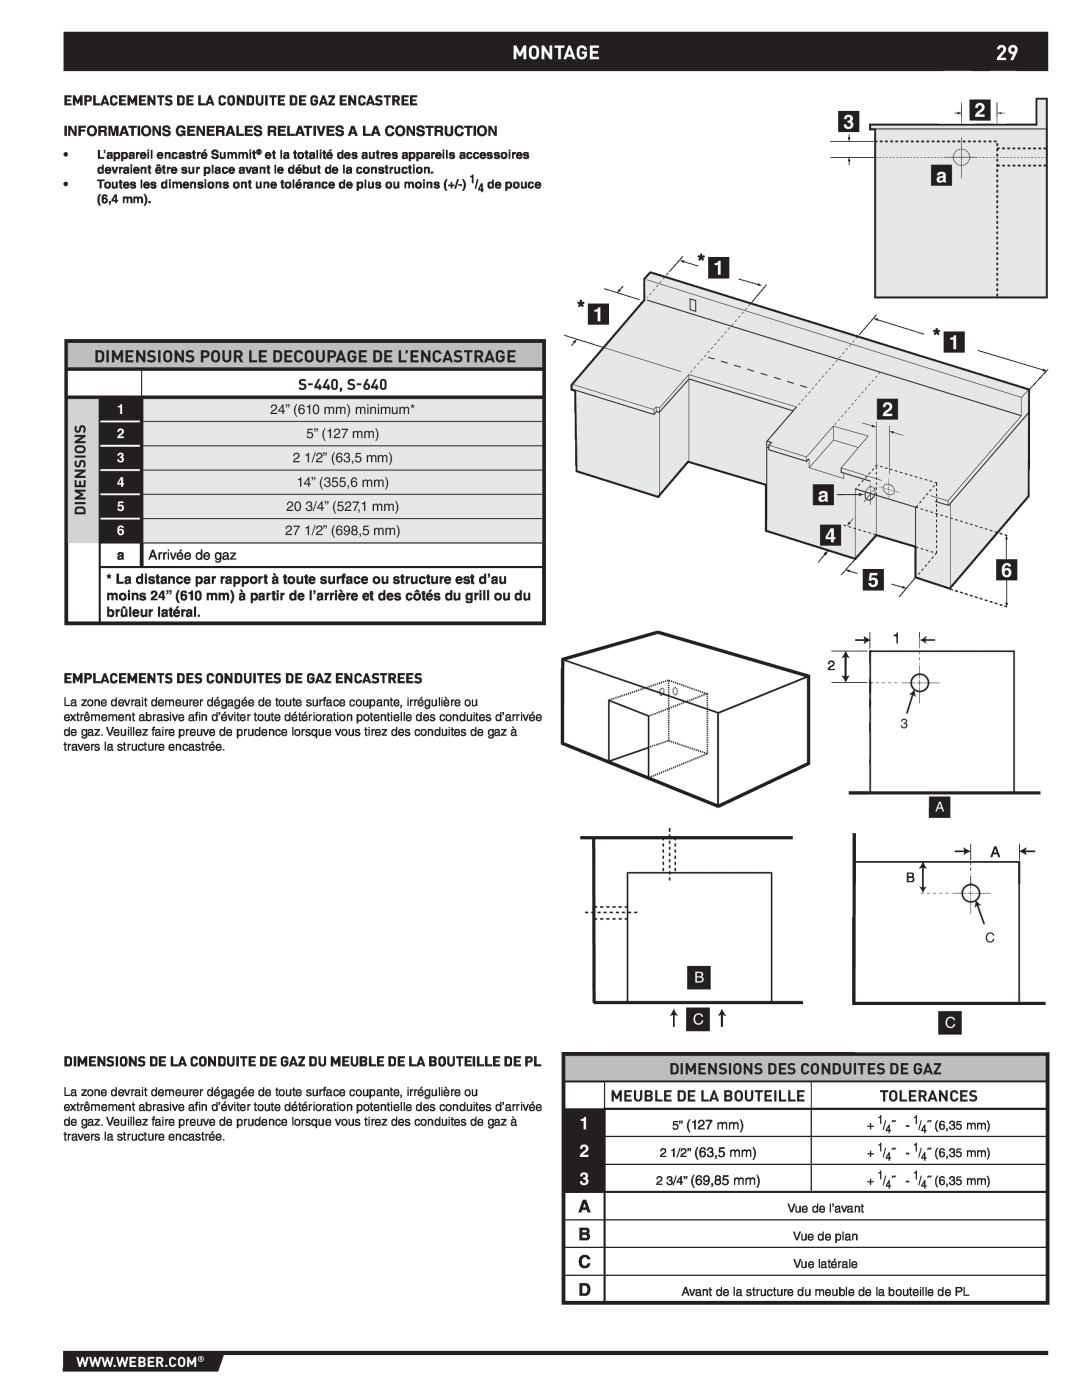 Weber 43176 manual Montage, Dimensions Pour Le Decoupage De L’Encastrage 